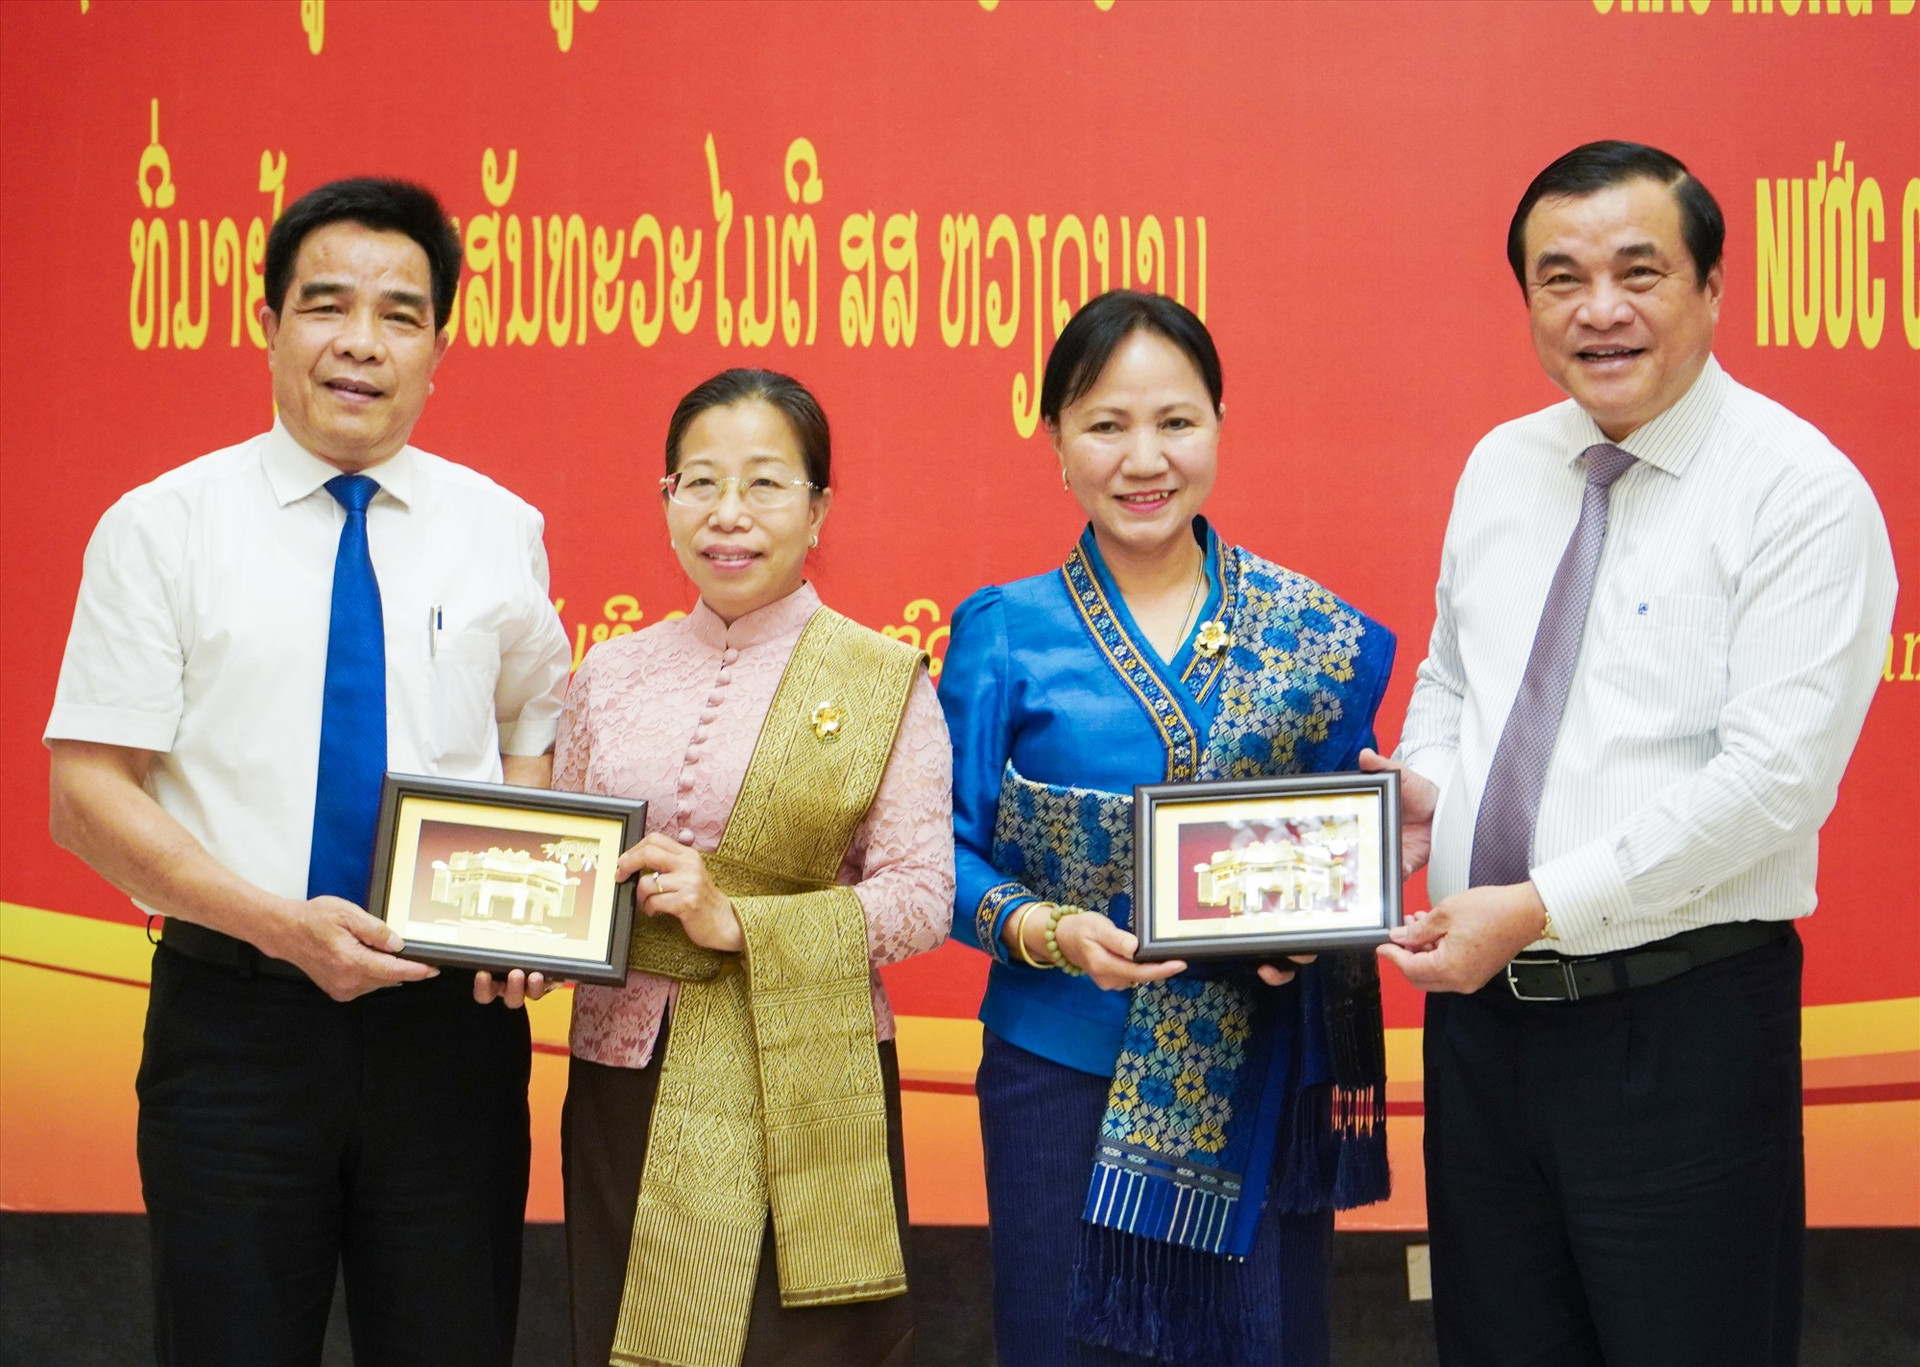 Lãnh đạo tỉnh Quảng Nam trao quà kỷ niệm tặng Hội LHPN Lào trong chuyến thăm hữu nghị Việt Nam tại Quảng Nam. Ảnh: Q.L